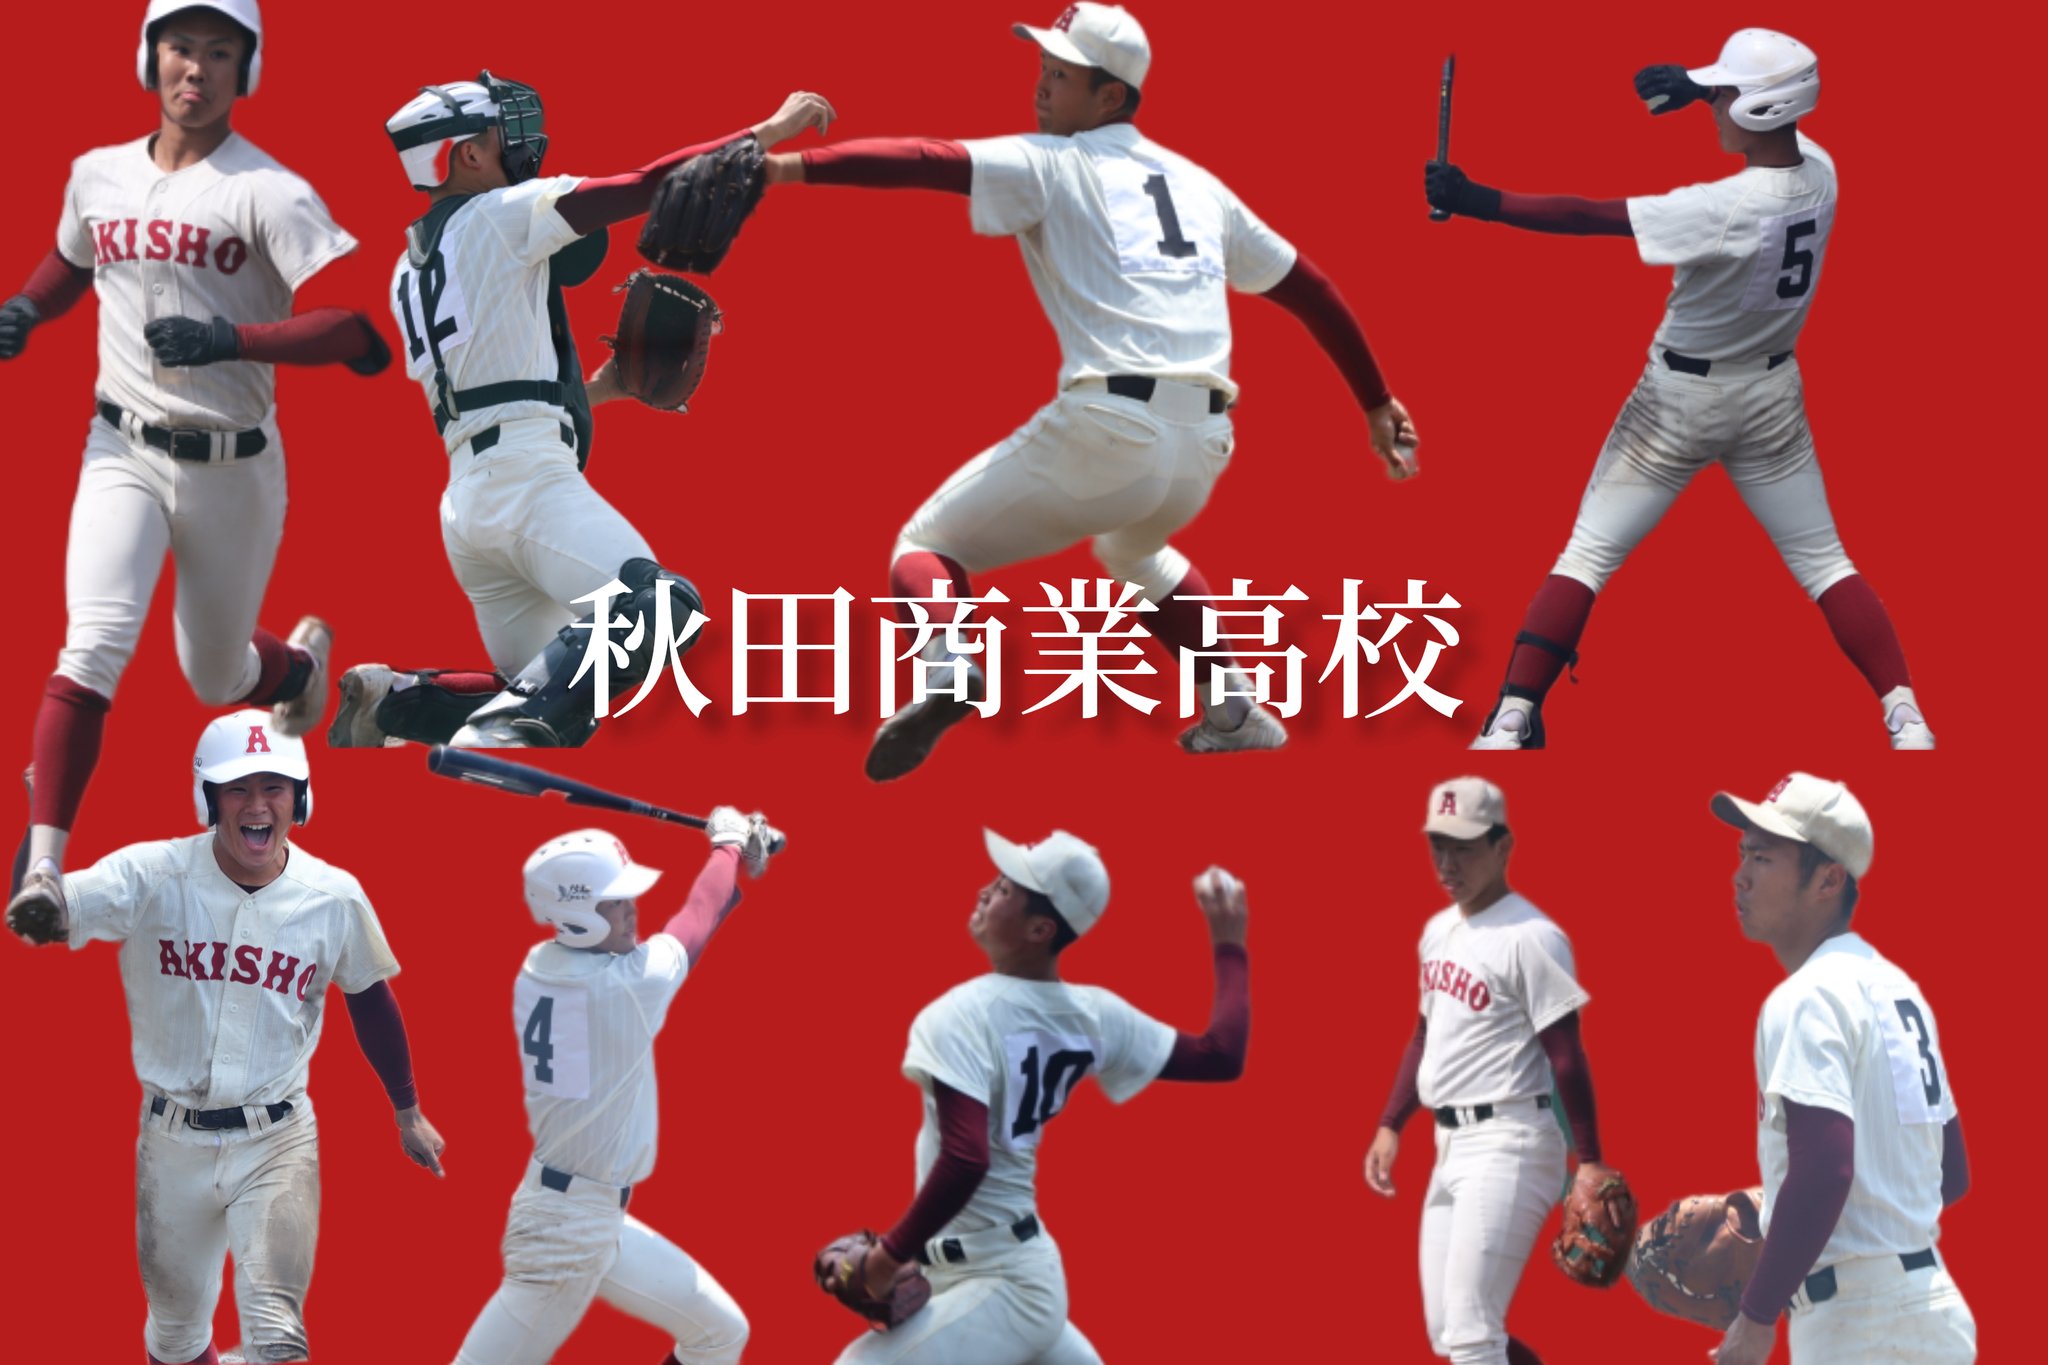 تويتر 秋田の高校野球 بحث تويتر